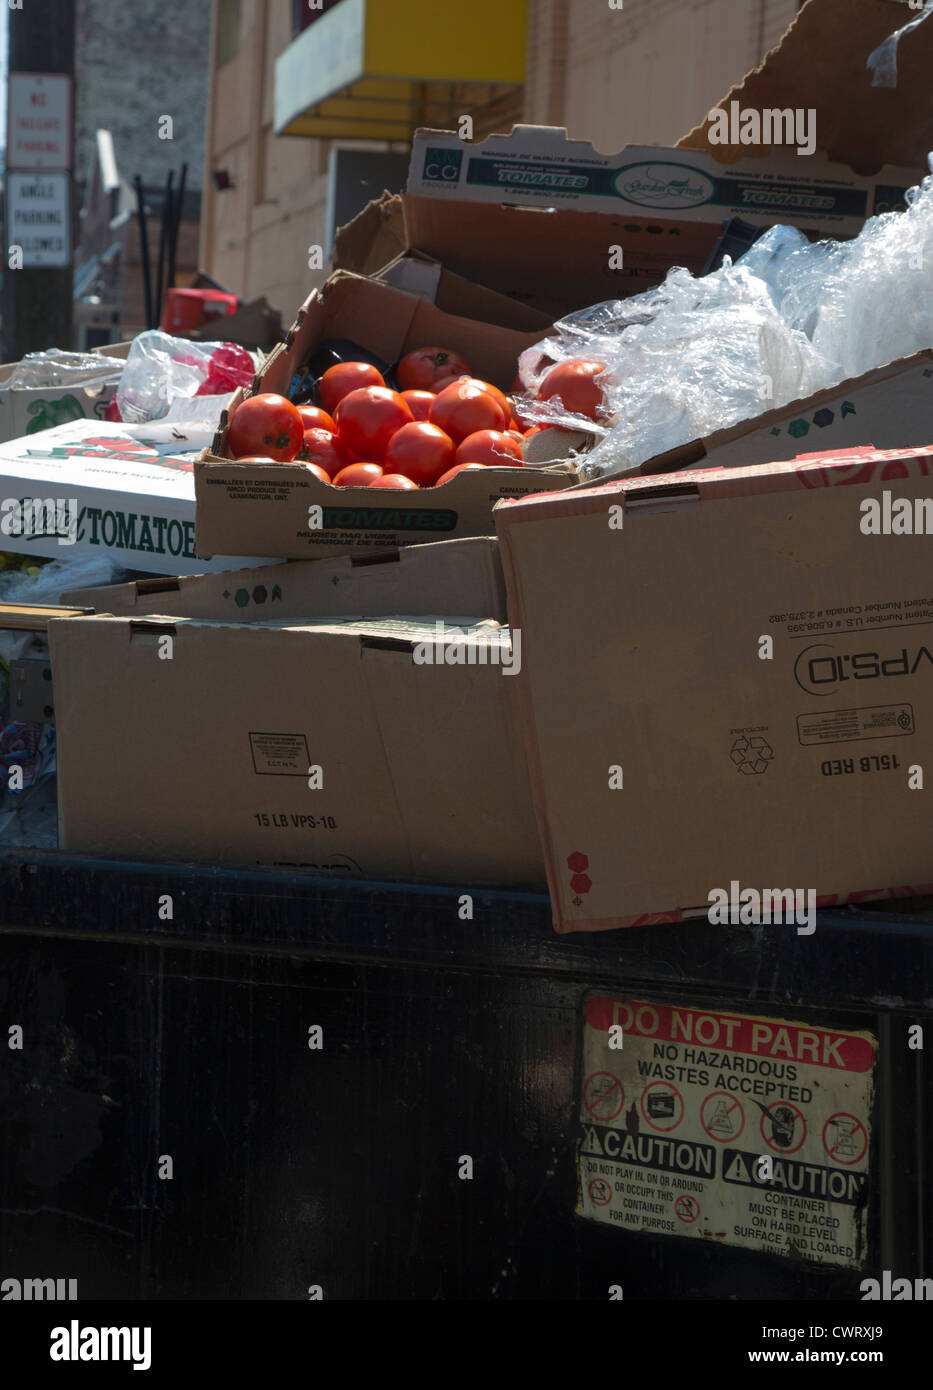 Detroit, Michigan - Tomaten in eine Mülltonne am osteuropäischen Markt, einen großen Wochenmarkt in der Nähe von Downtown Detroit geworfen. Stockfoto